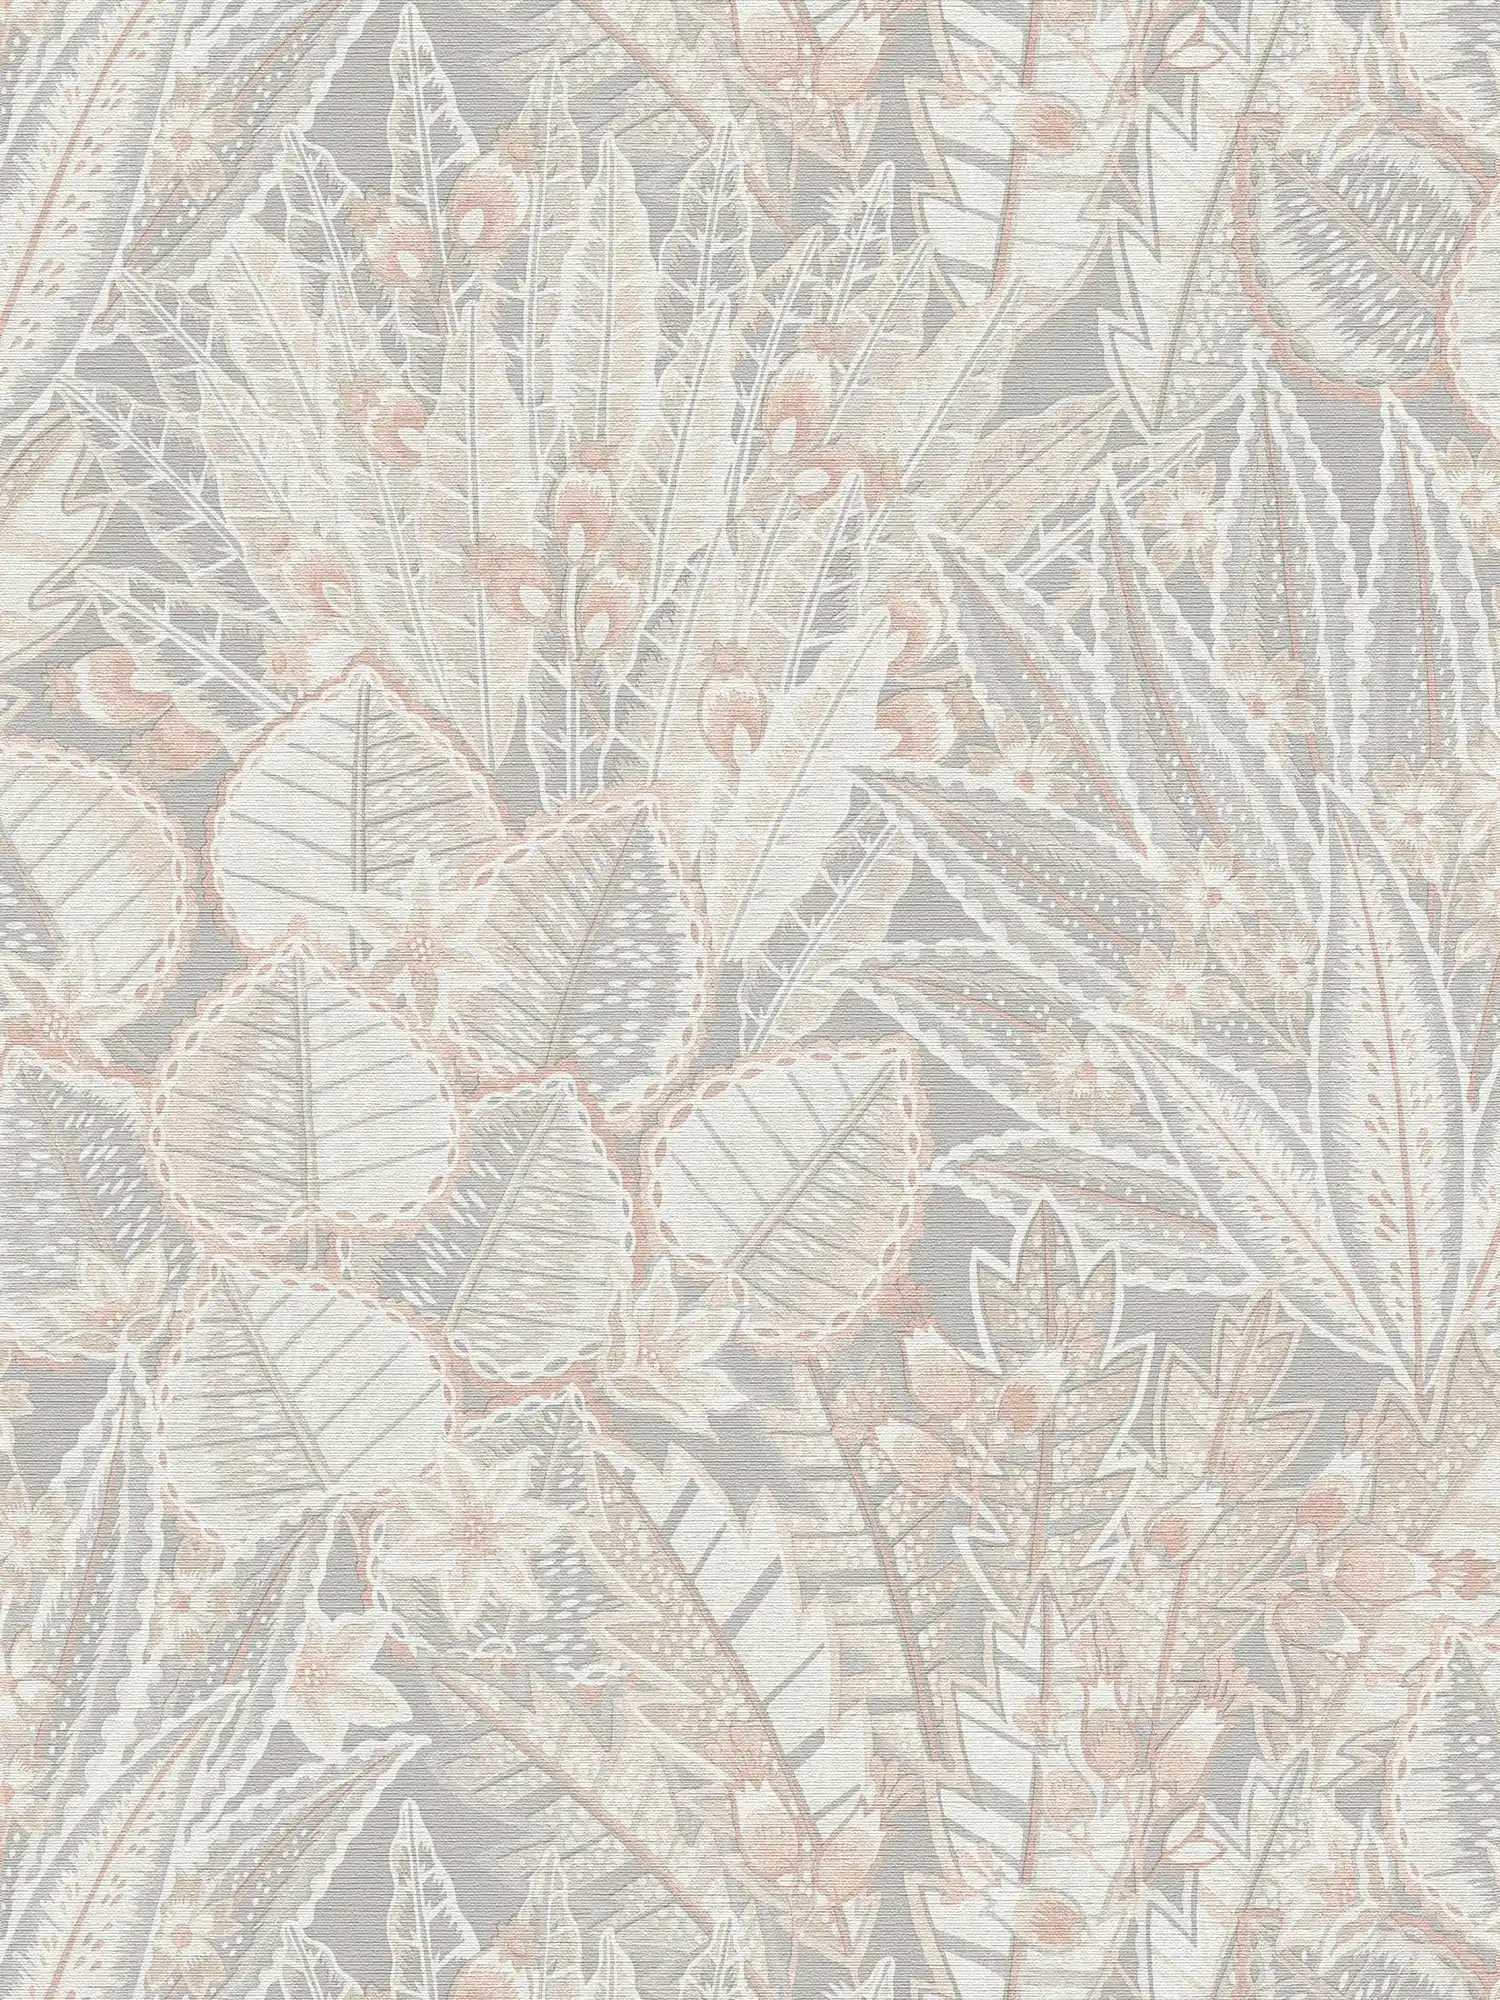 Papel pintado tejido-no tejido floral en colores suaves y aspecto mate - gris, beige, blanco
